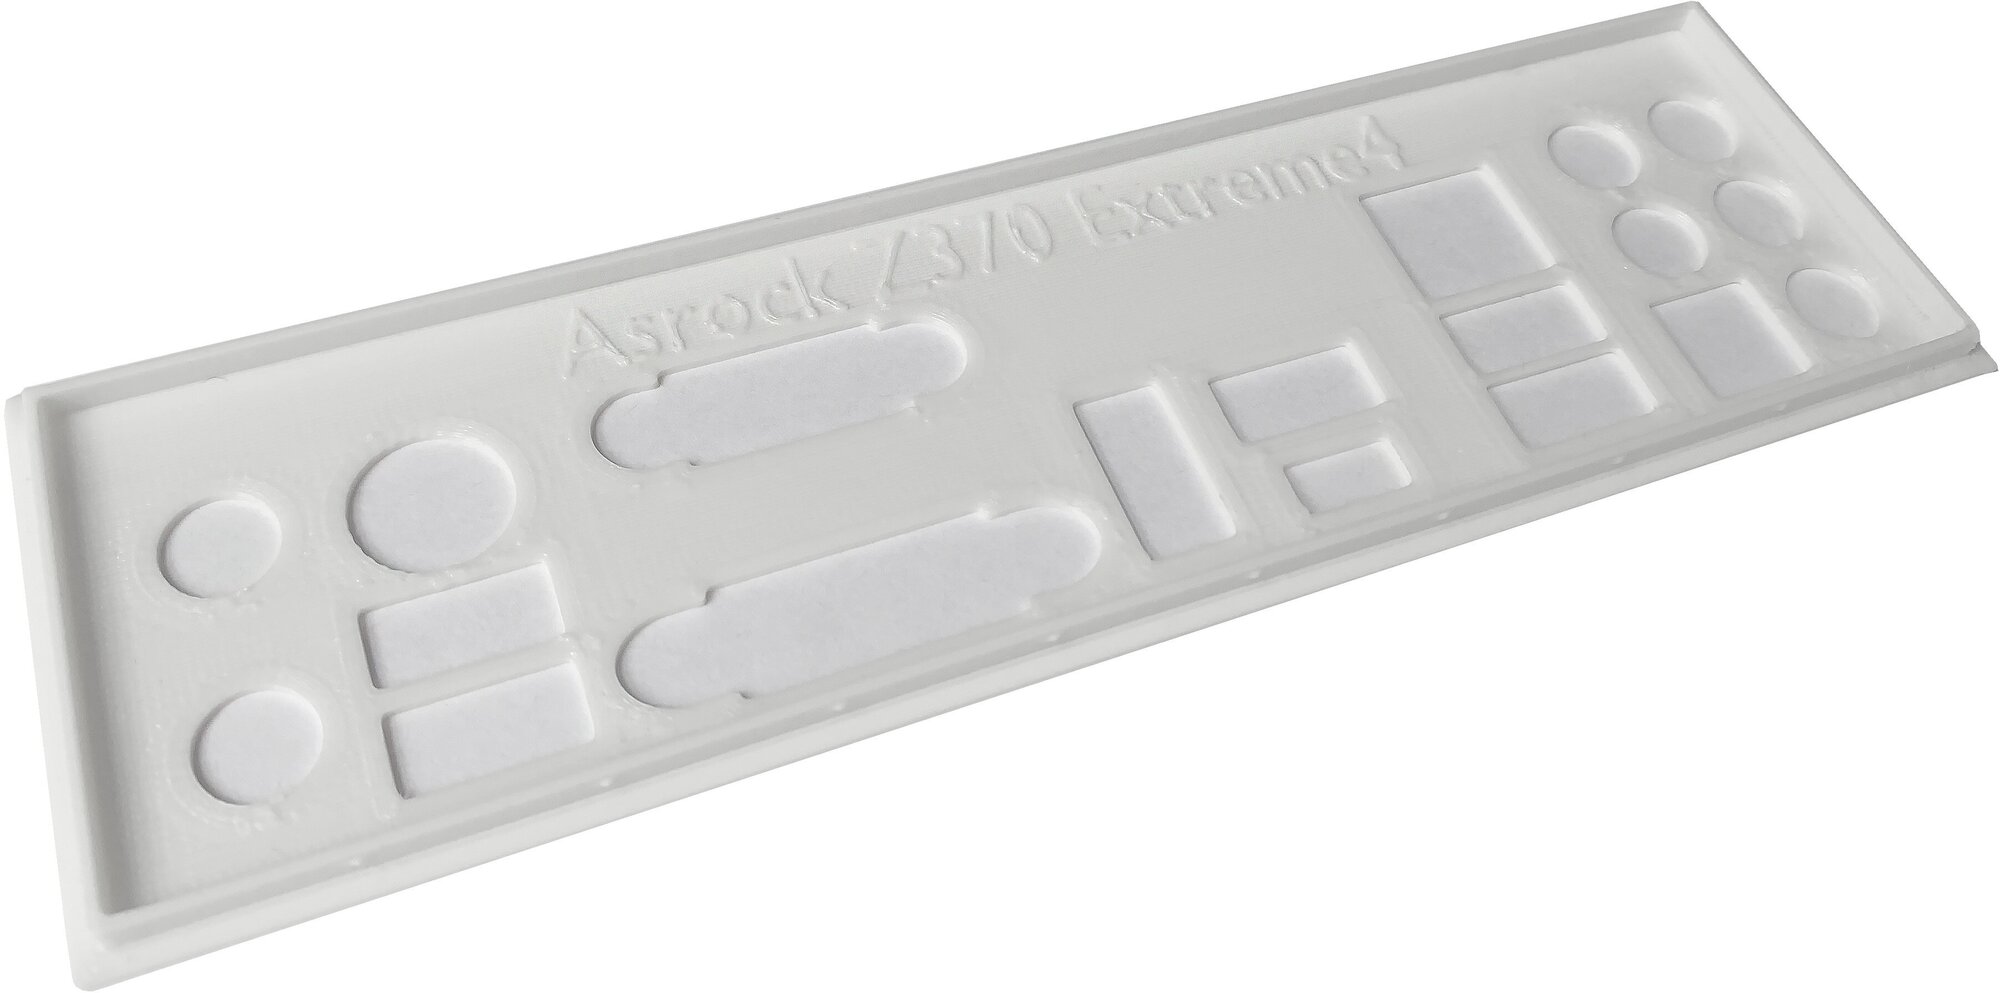 Пылезащитная заглушка задняя панель для материнской платы Asrock Z370 Extreme4